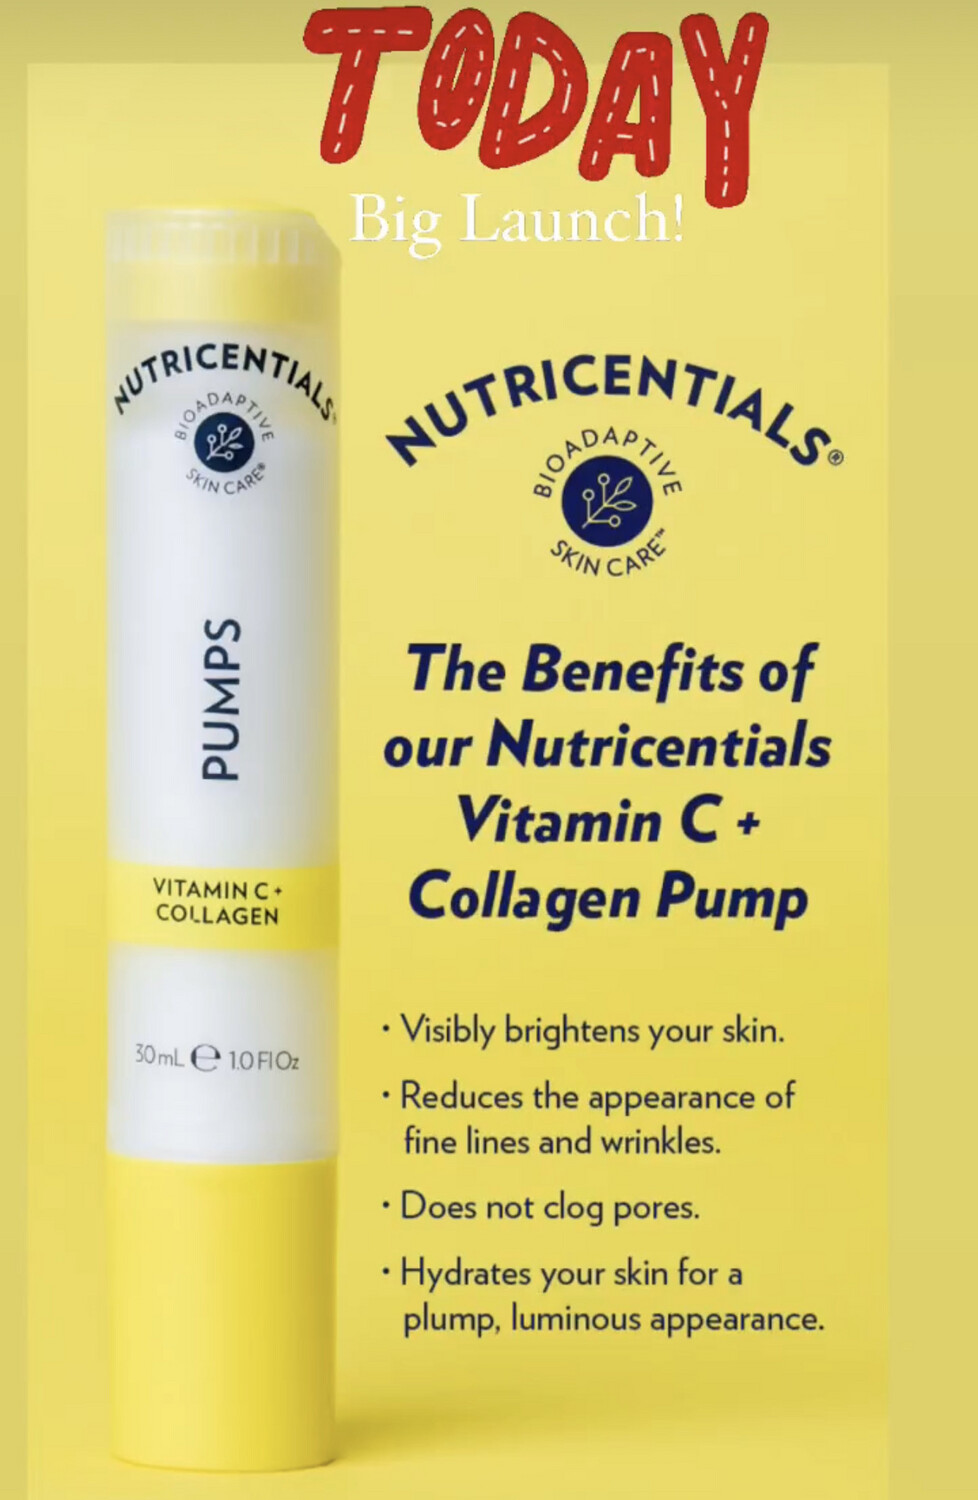 Vitamin C + collagen pump